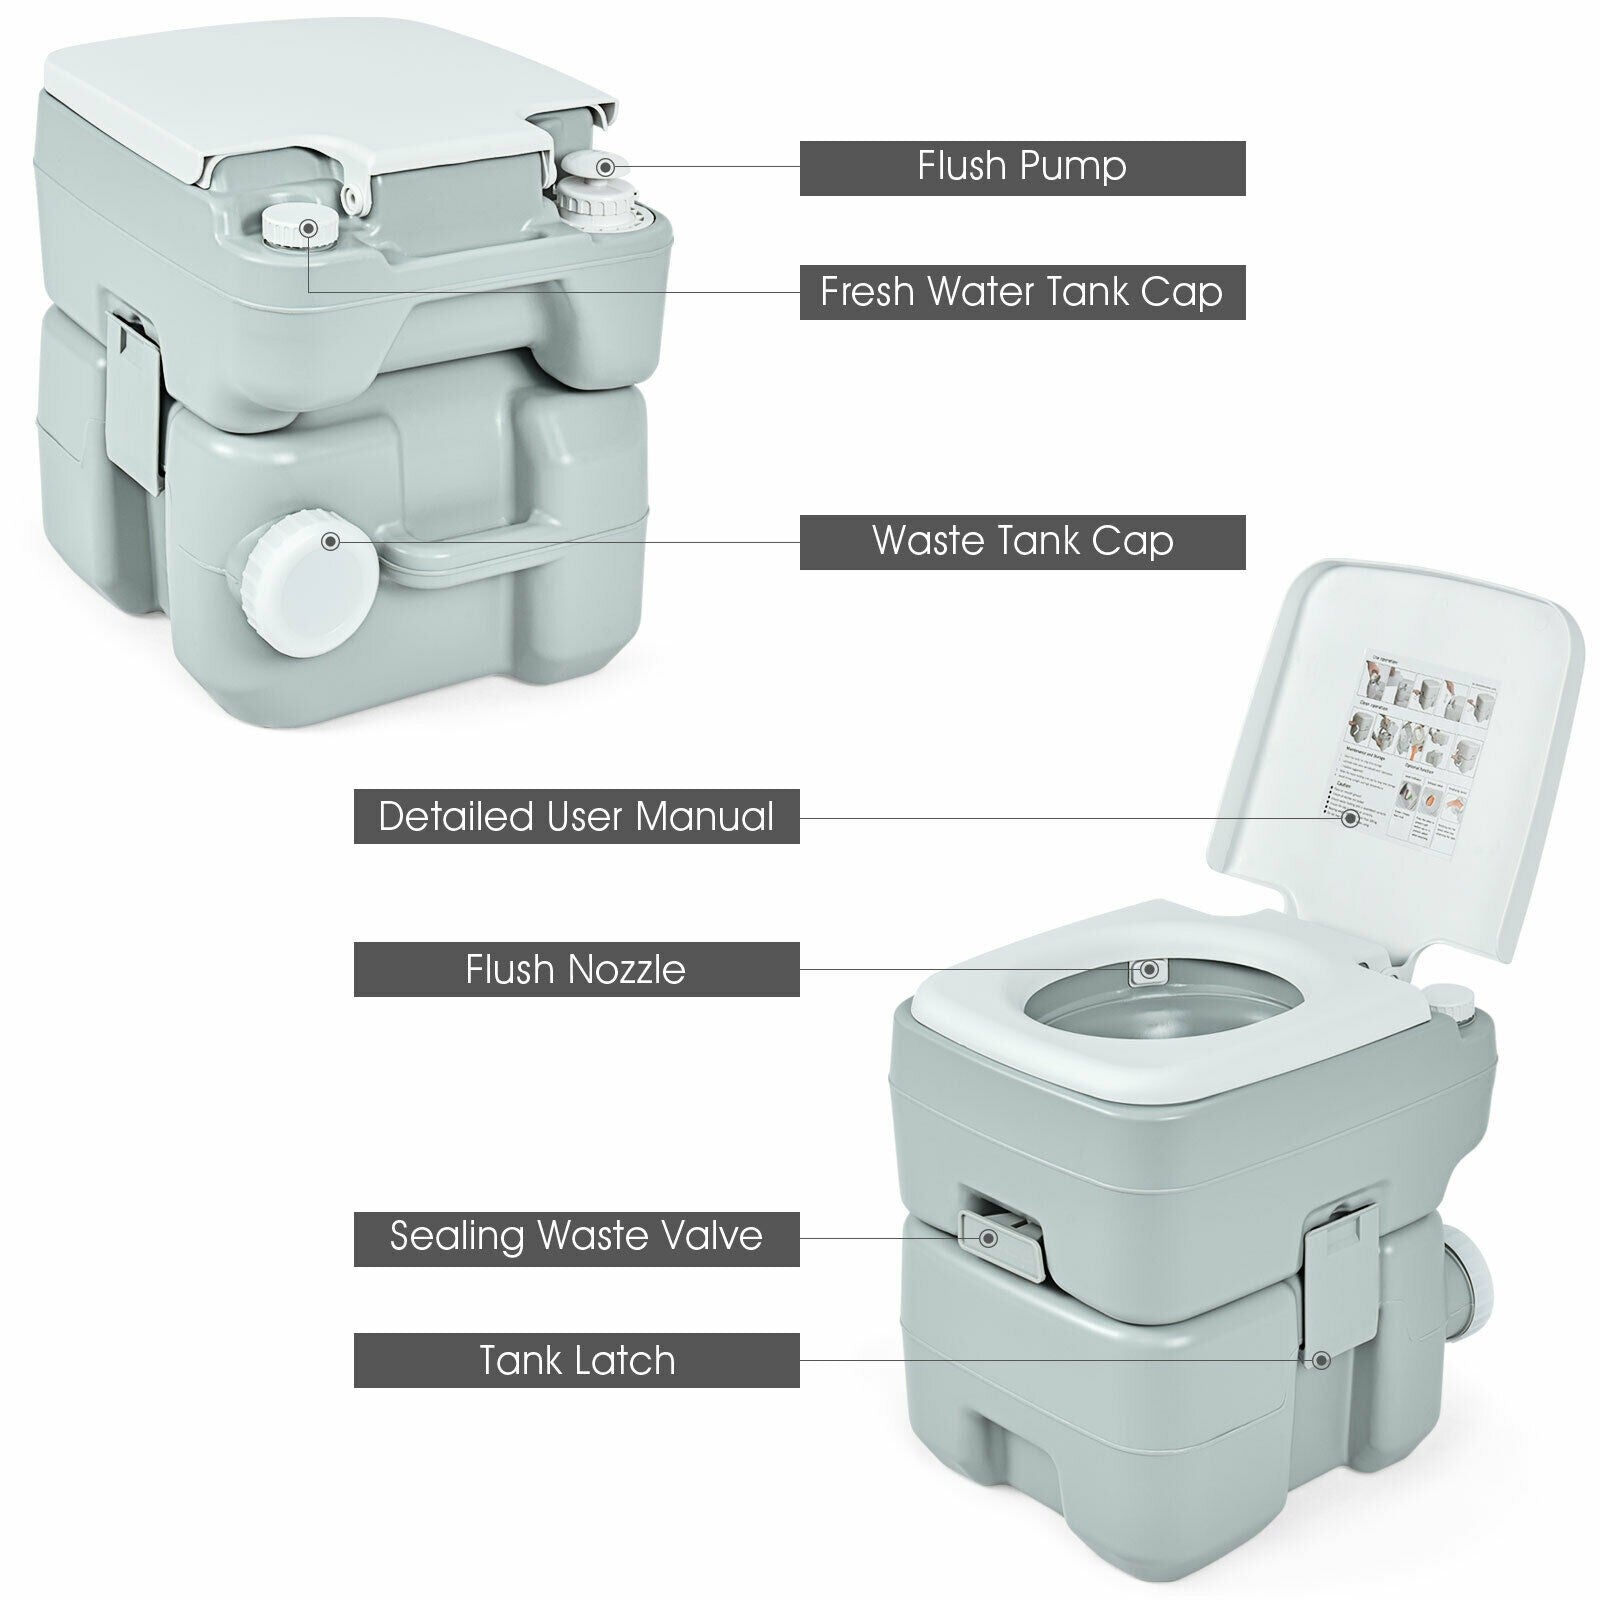 Giantex Portable Toilet 5.3 Gallon